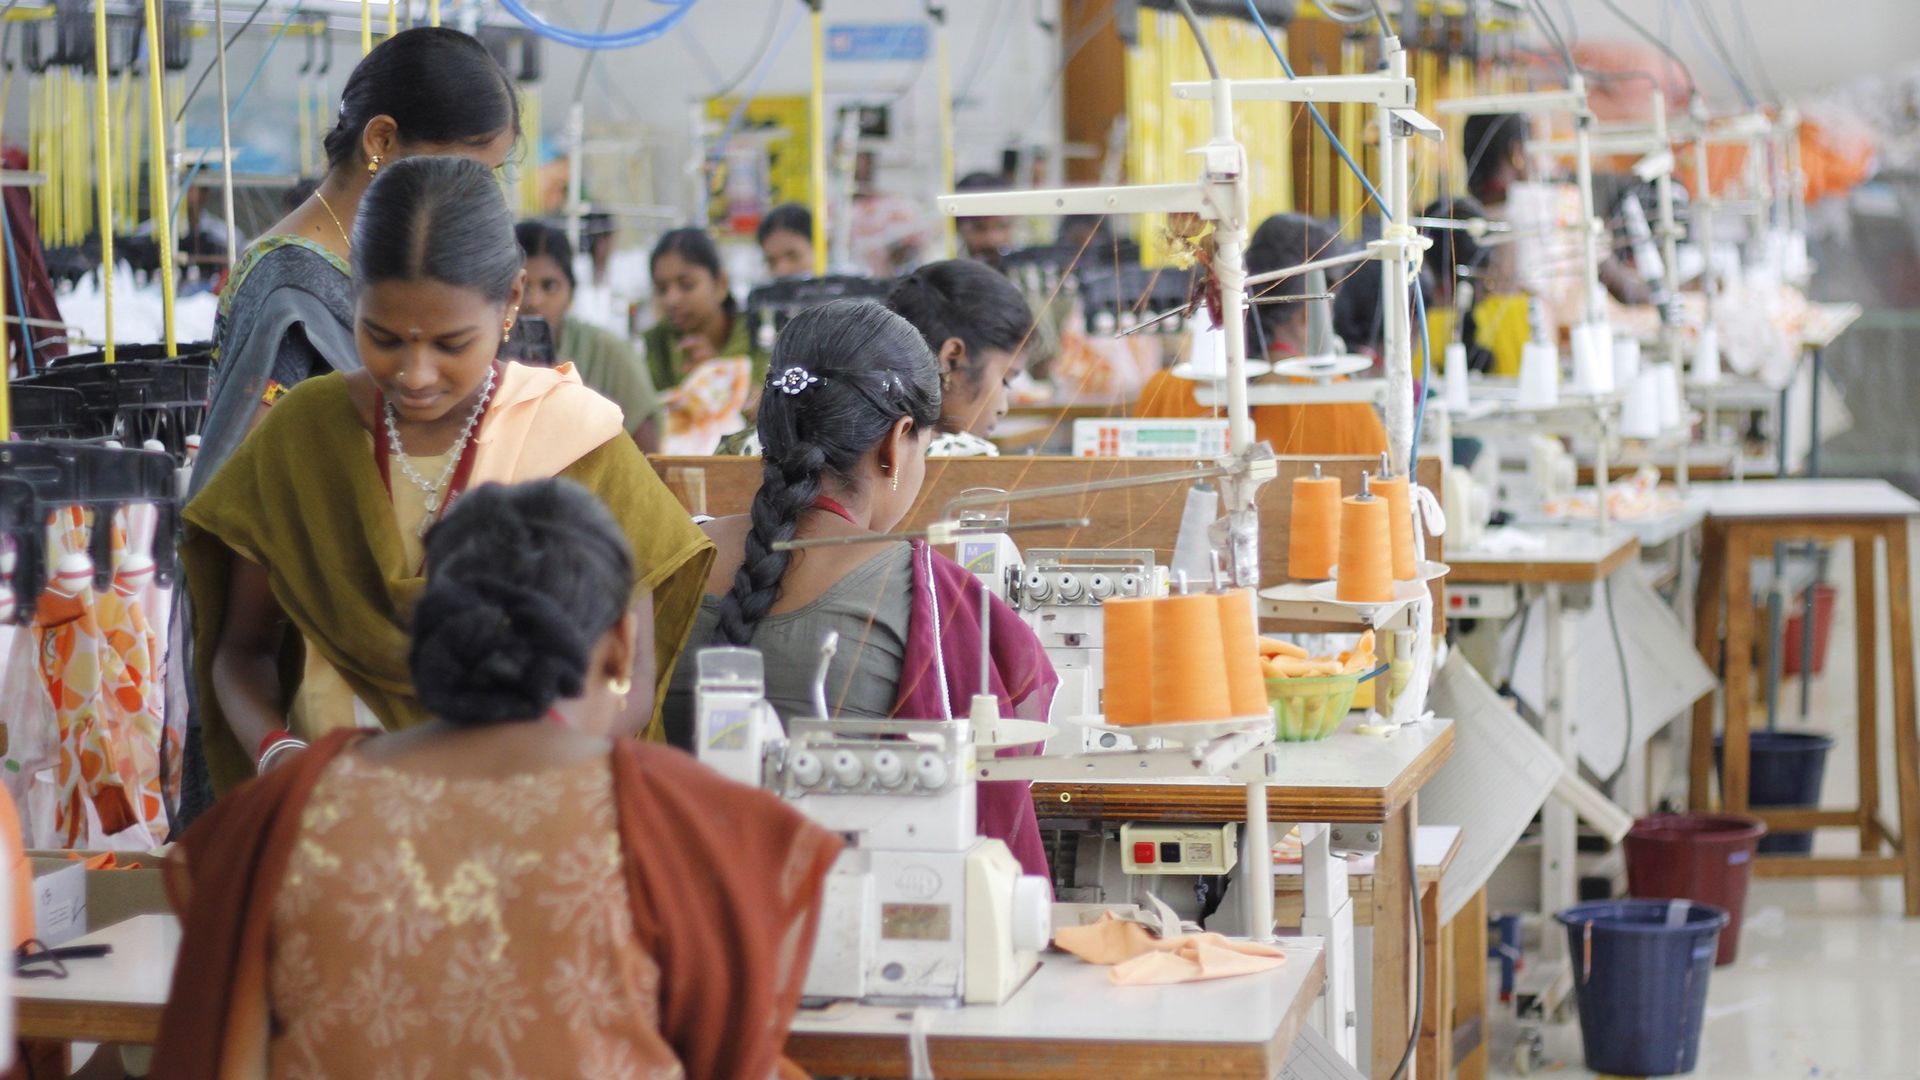 L'usine textile Armstrong Knitting Mills, en Inde.